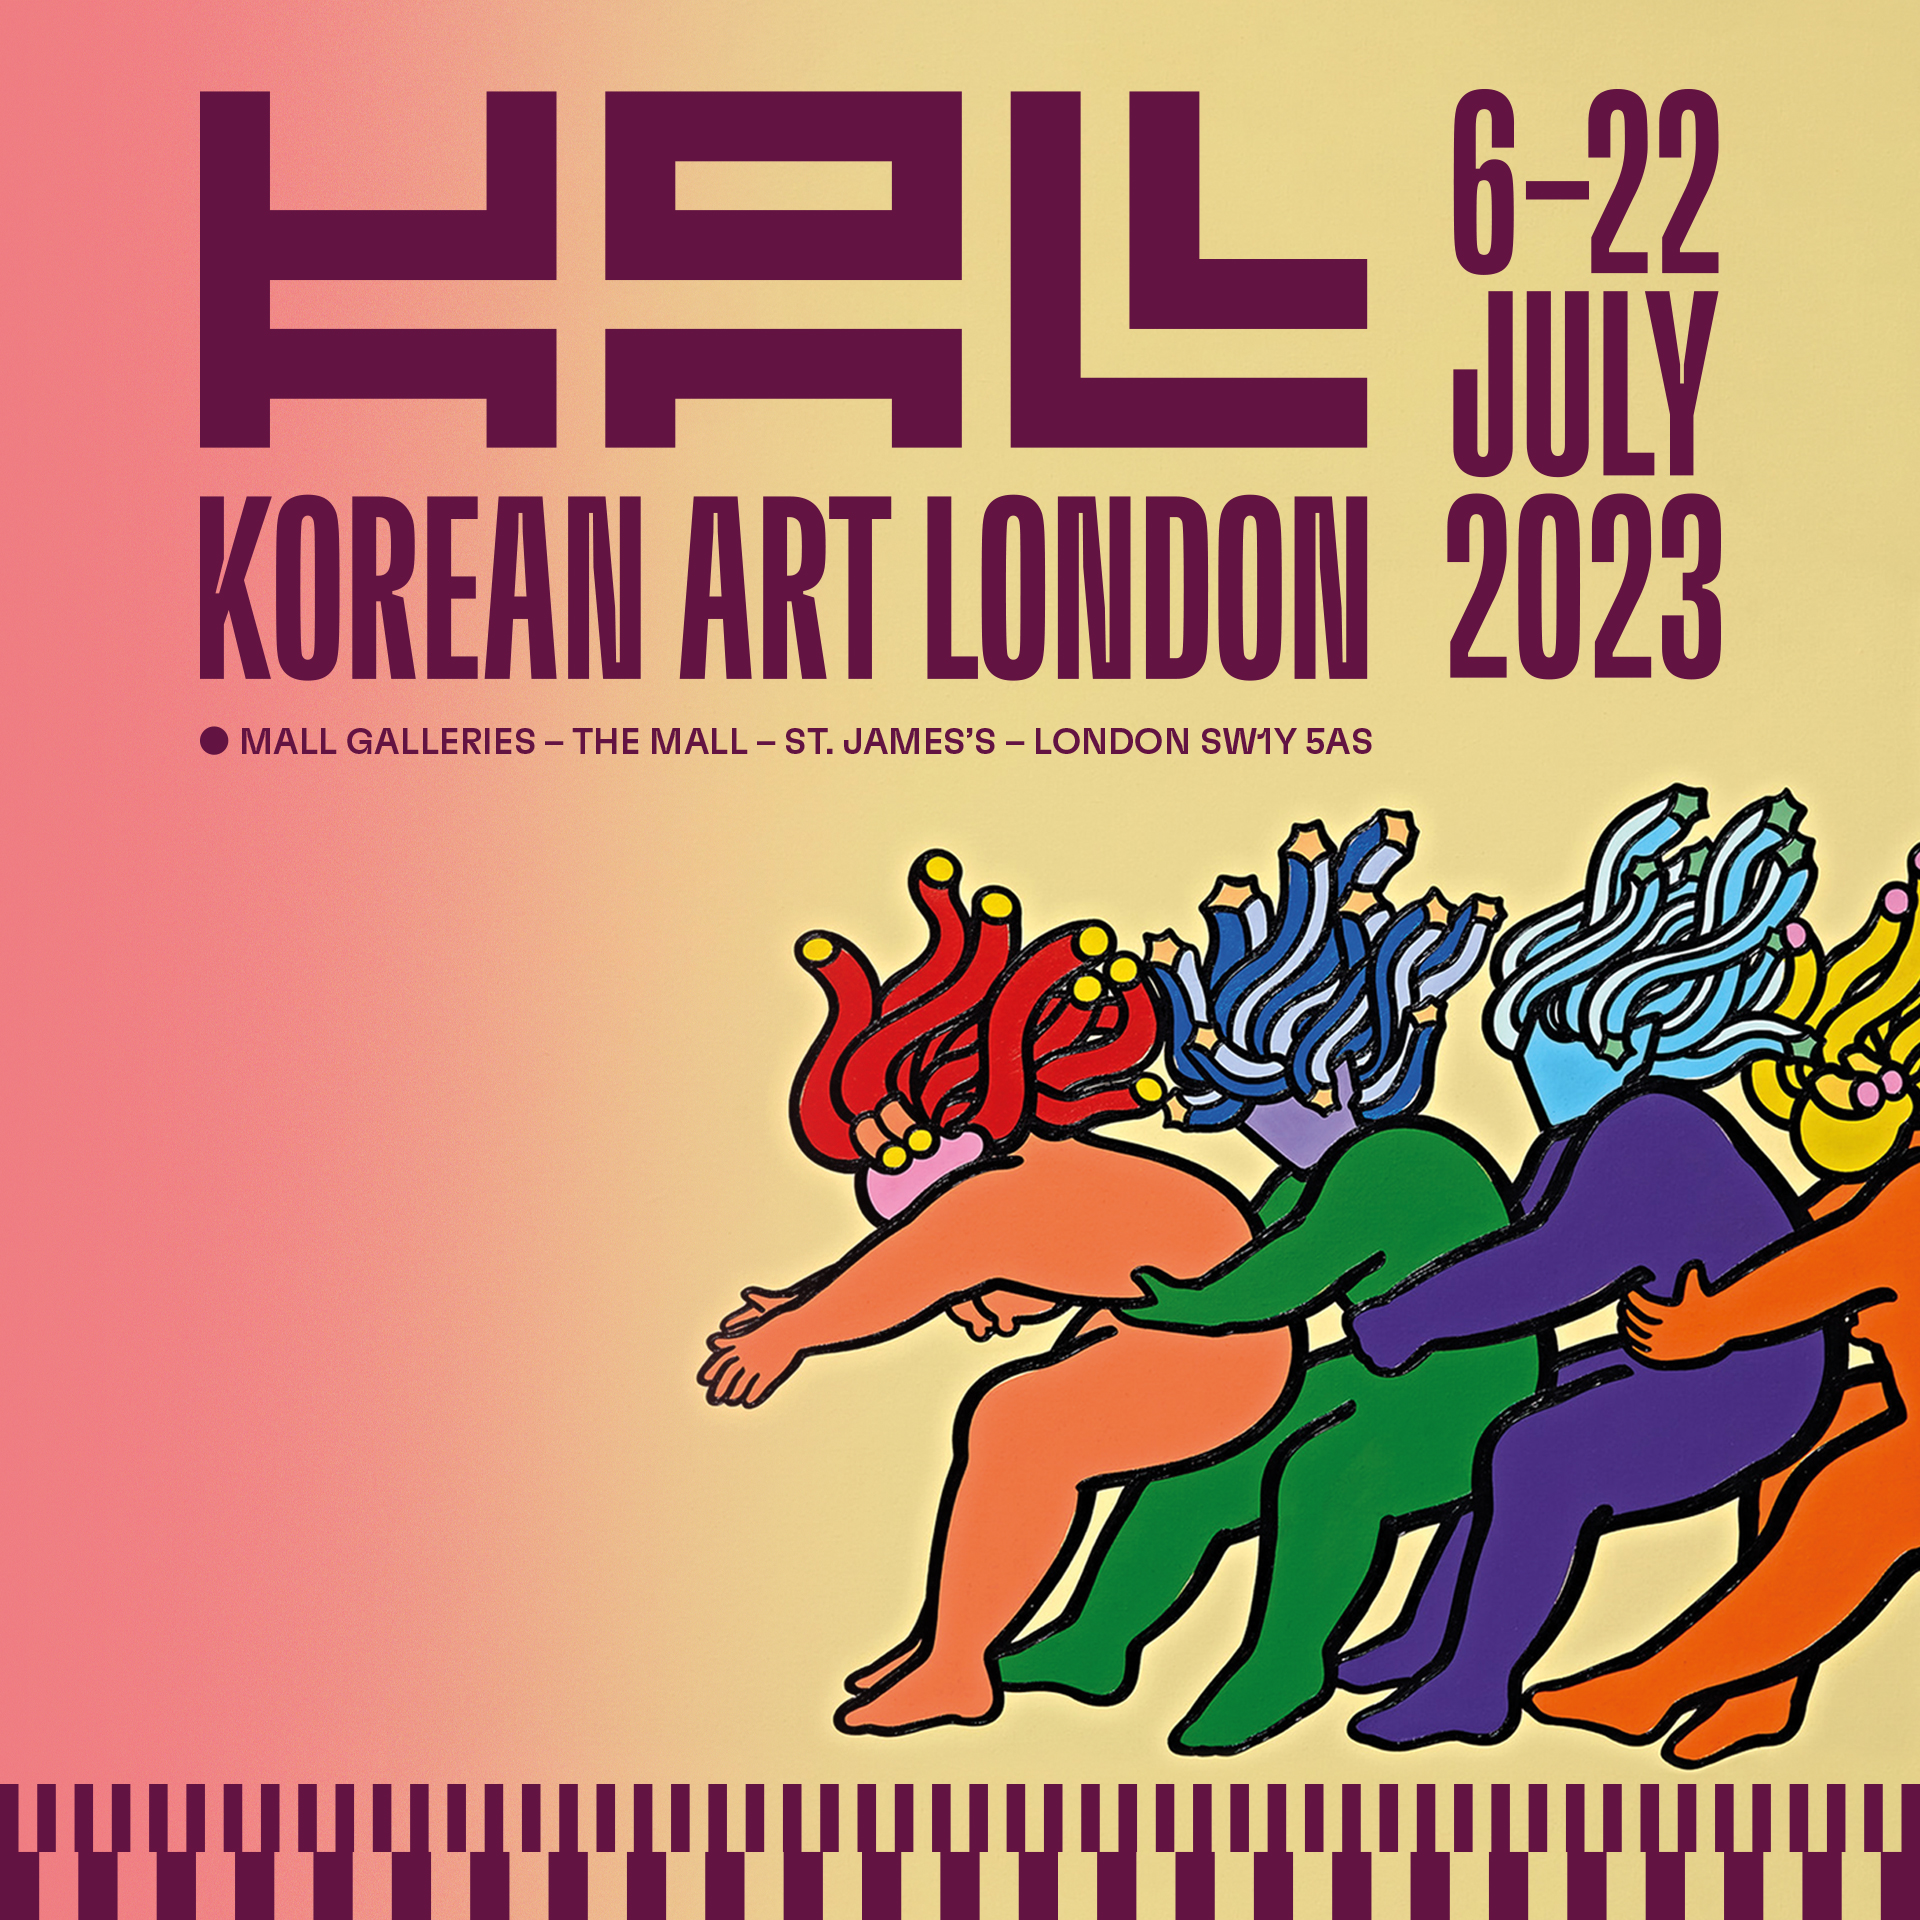 < 한국 현대미술 작가들의 전시 '코리안 아트 런던(Korean Art London) 2023' 포스터 - 출처: Korean Art London 2023 홈페이지 >